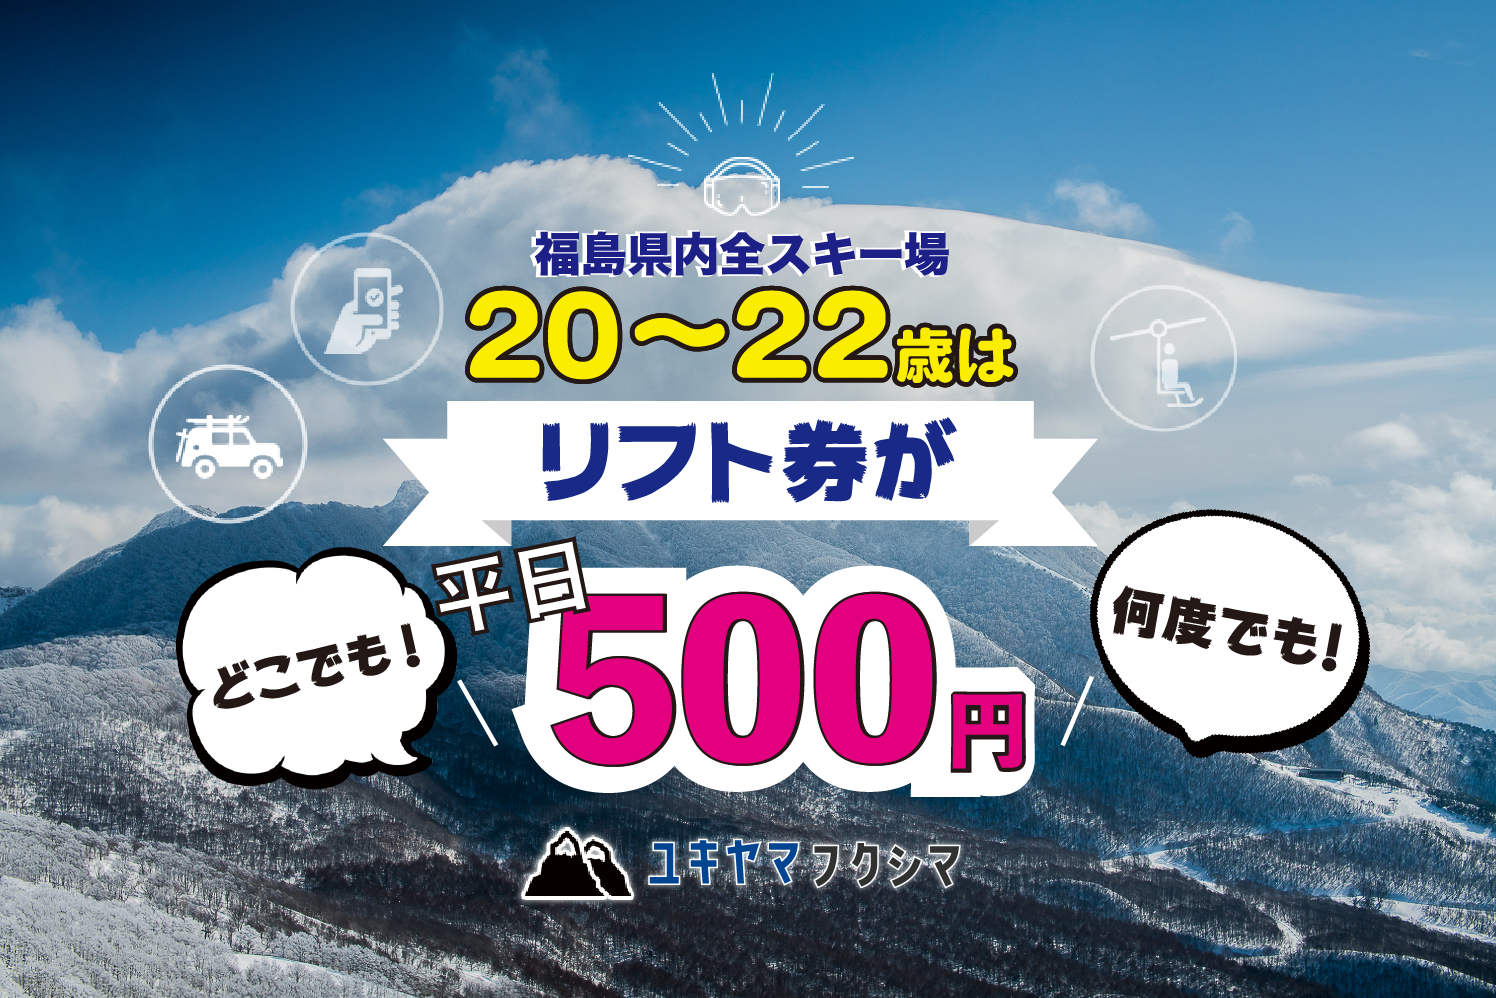 20~22歳は福島県全スキー場・平日リフト券がたった500円!しかも期間中 